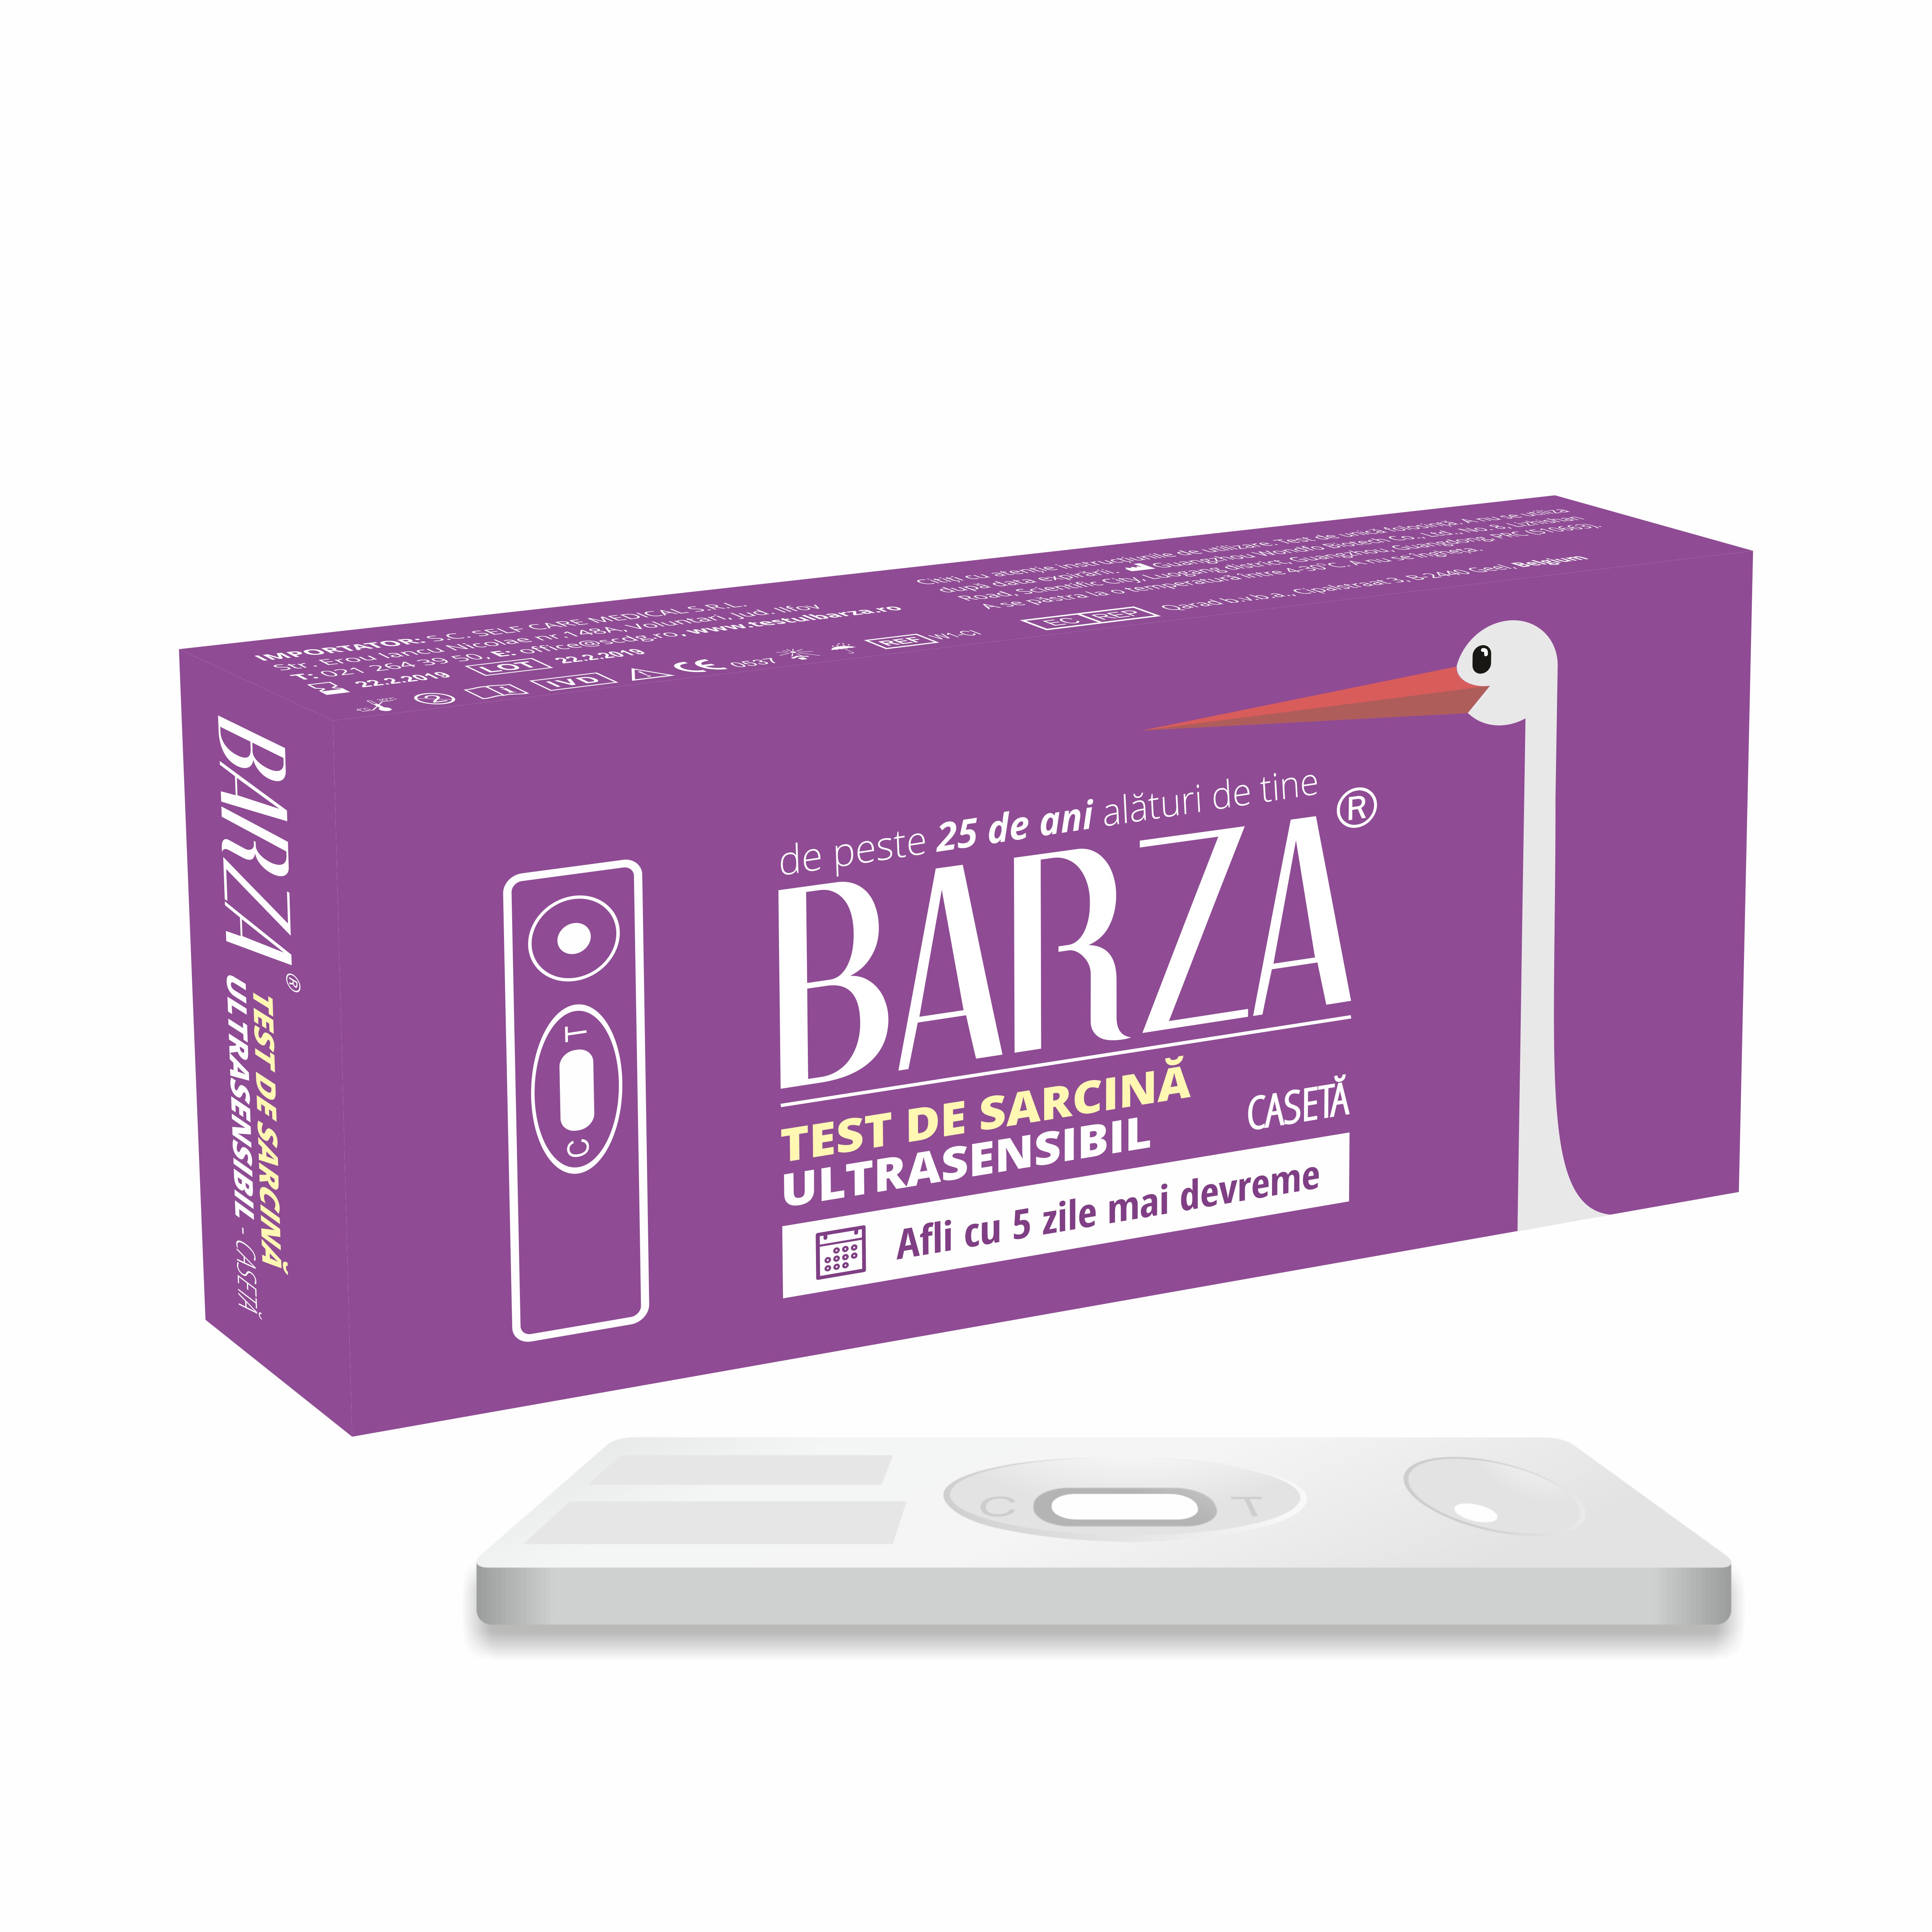 Teste - Barza Test de sarcină ultrasensibil casetă, sinapis.ro